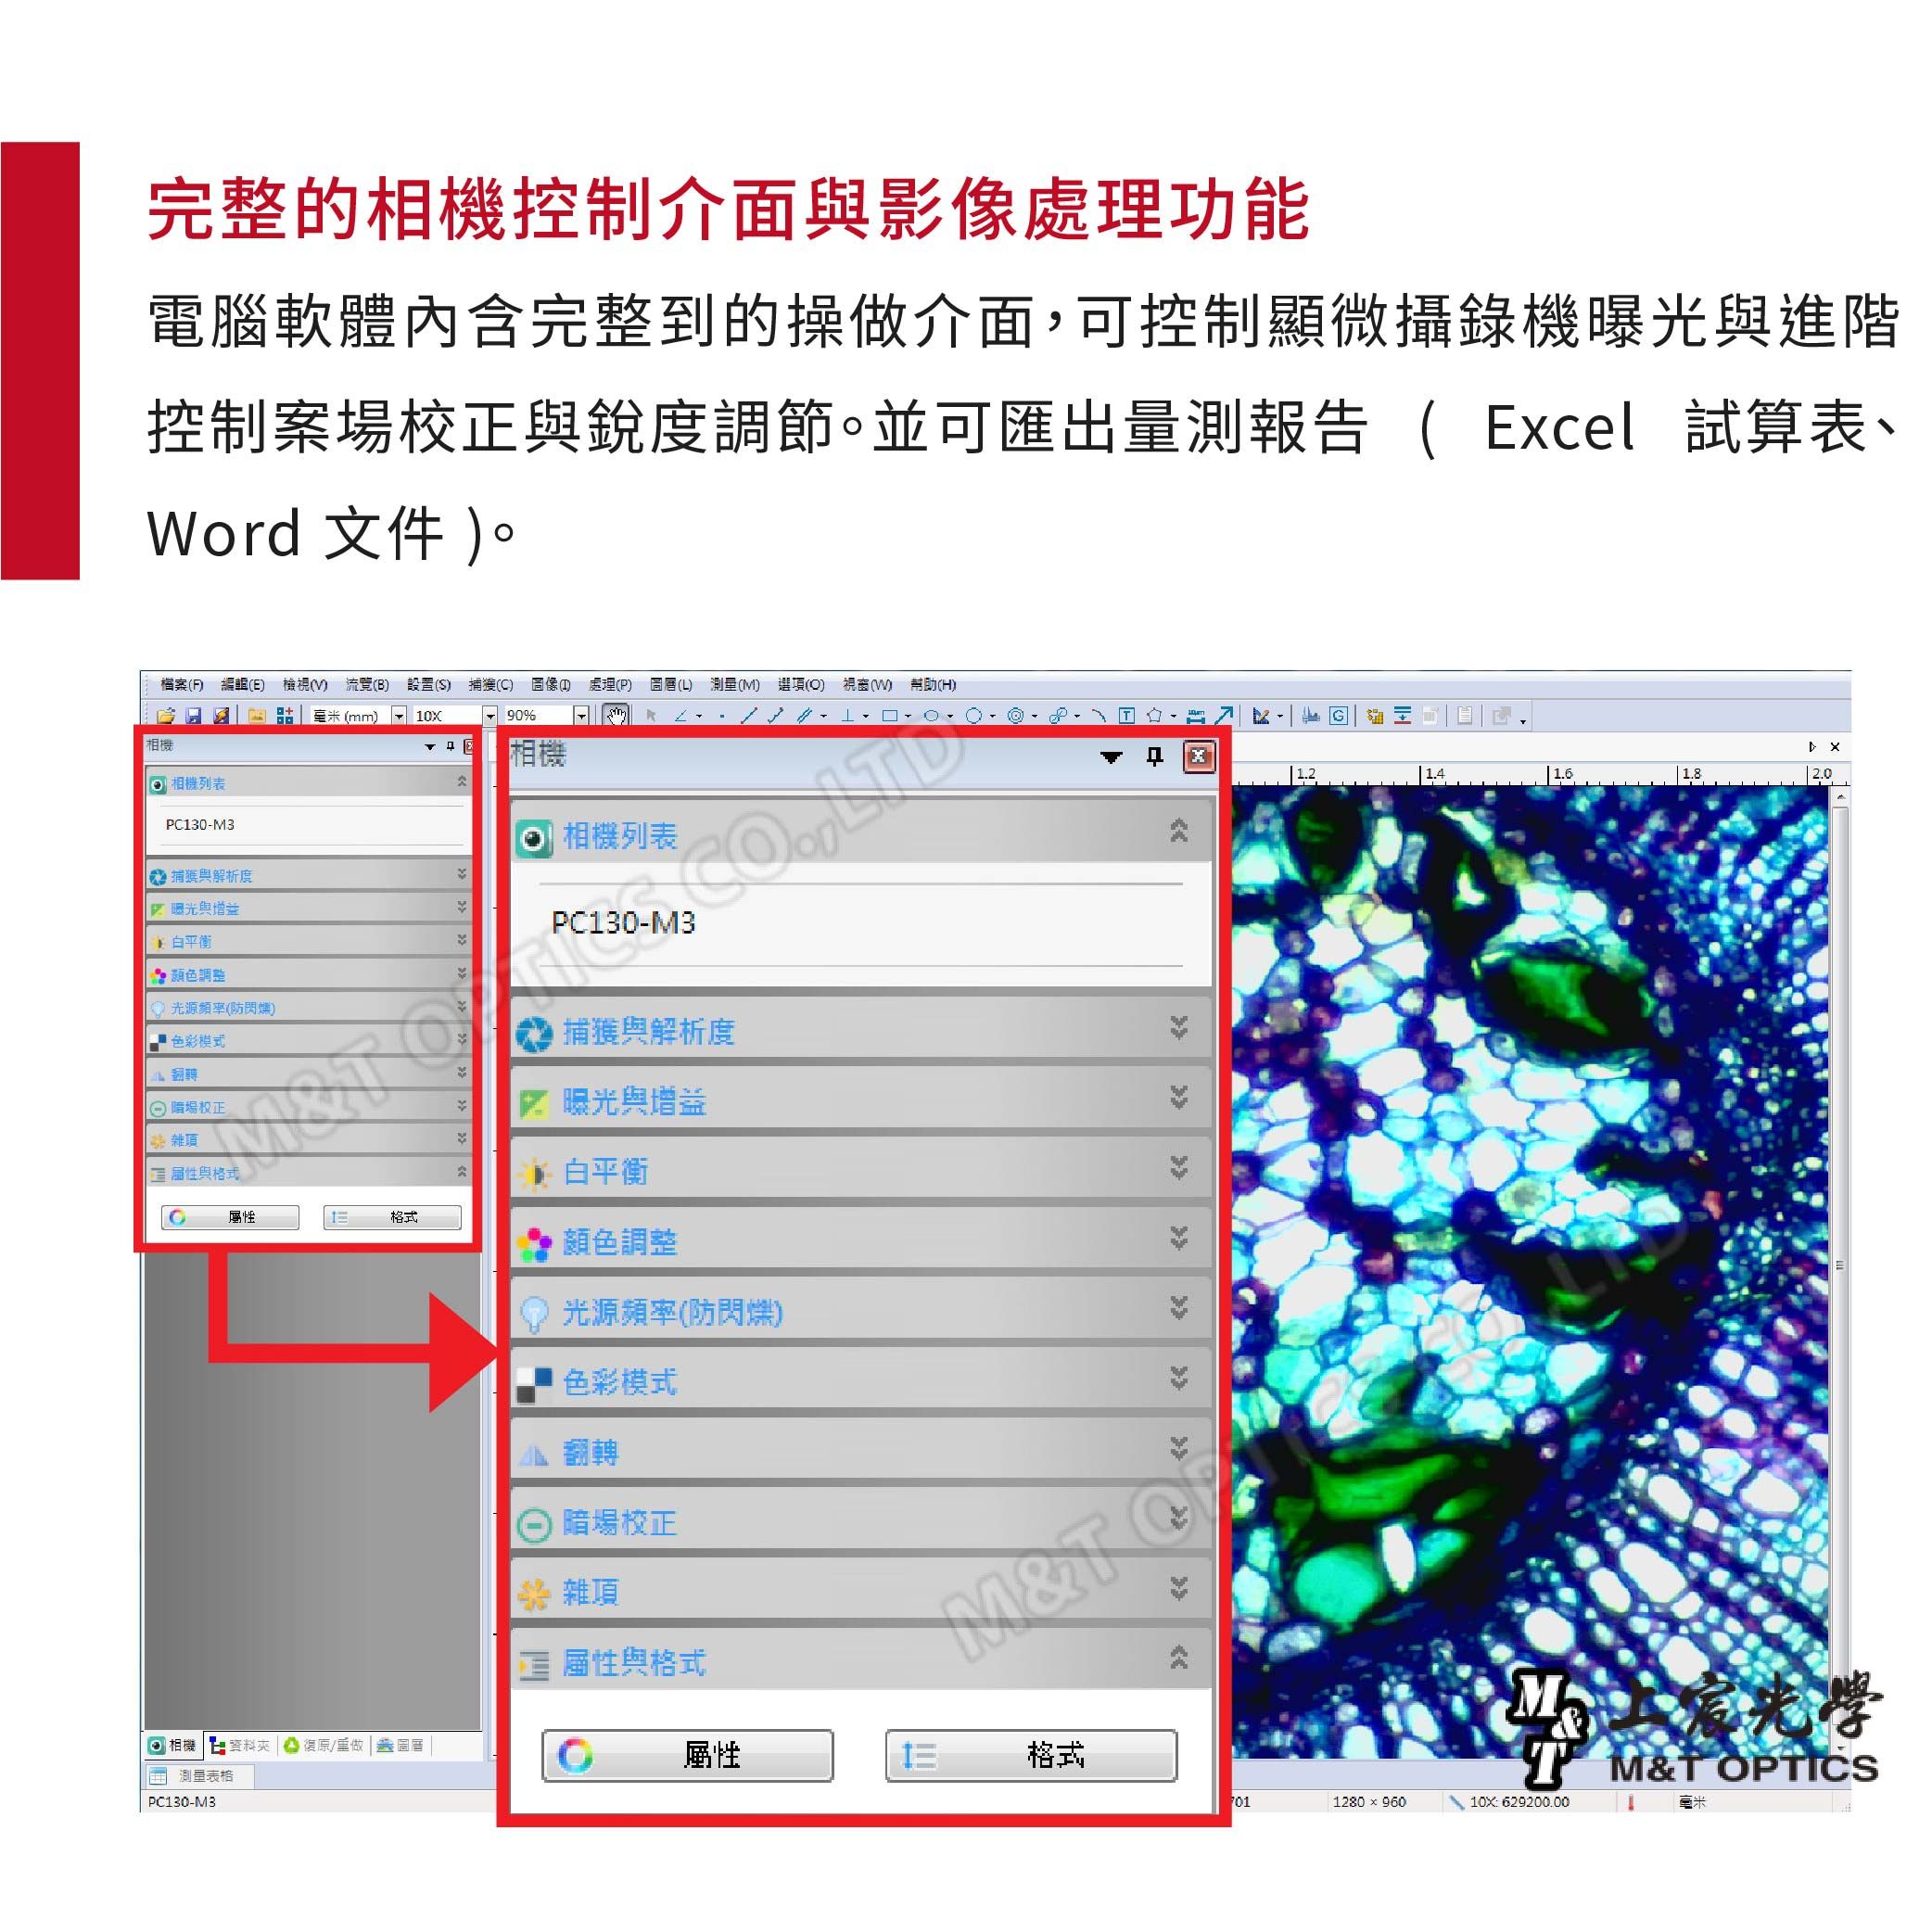 完整的相機控制介面影像功能電腦軟體內含完整到的操做介面,可控制顯微攝錄機曝光進階控制案場與銳度調節並可匯出量測報告 Ecel 試算表、Word 文件 。檔案 編輯E 檢視( 流覽(B 設置( 捕獲( 處理(P (L) 測量(M) 選項() 視窗() 幫助(H)相機 相機列表PC30-M3 捕獲與解析度 曝光與增益 白平衡 光源頻率(防閃爍)色彩模式毫米(mm)90相機相機列表PC130-M3捕獲與解析度場校正曝光與增益項與格式白平衡格式顏色調整 相機 資料 復原/重做 圖厝測量表格PC130-M31) 光源頻率(防閃爍)色彩模式翻轉場校正 雜項 屬性與格式G 1.2 1.41.6M& 屬性格式1280 x 960M M&T OPTICS 629200.00毫米